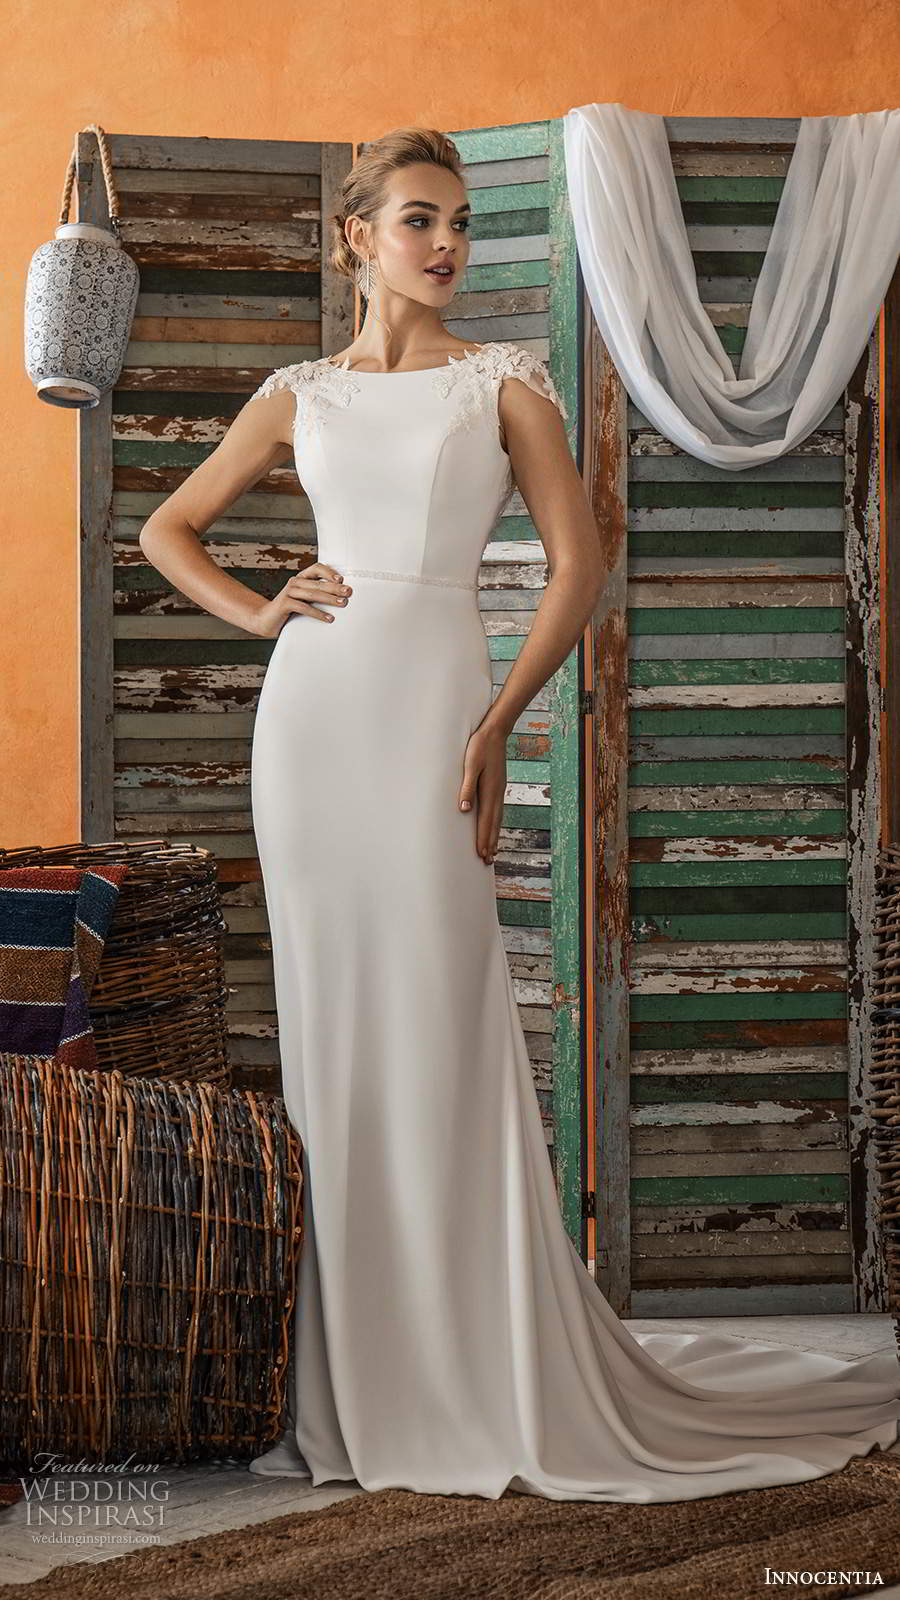 innocentia 2021 bridal cap sleeves bateau neckline clean minimalist simple sheath wedding dress chapel train (17) mv